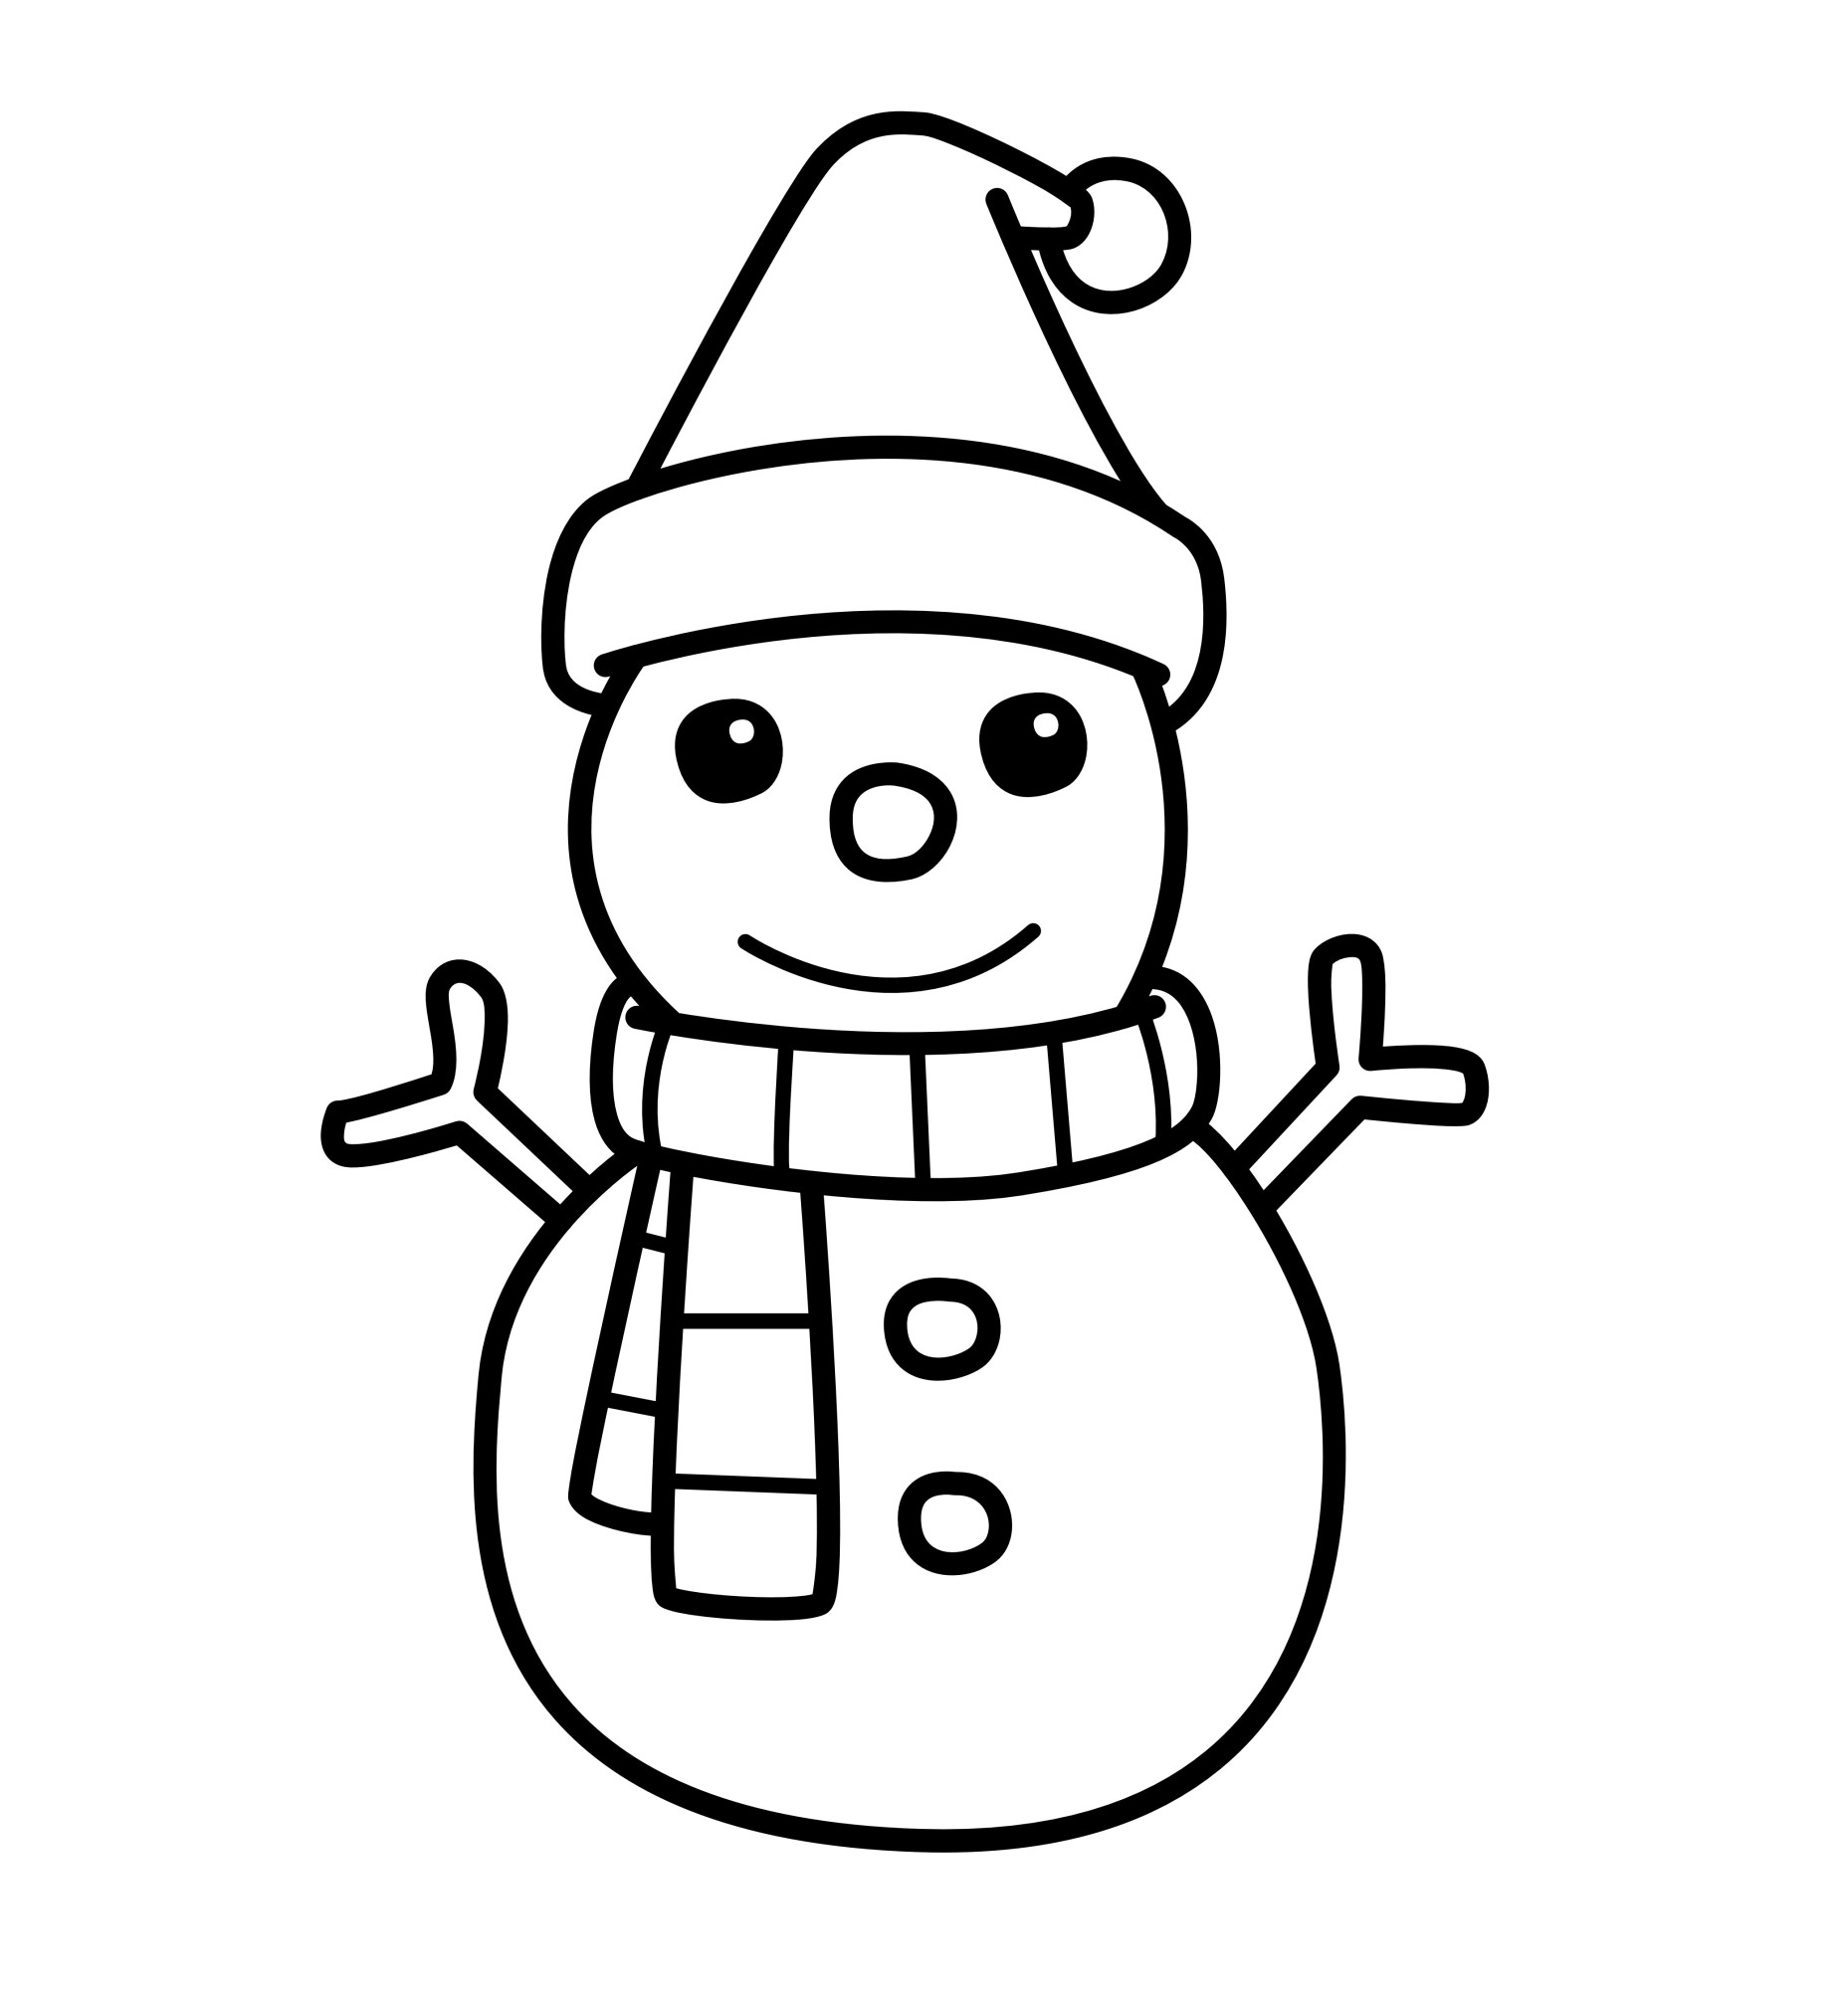 Раскраска для детей: снеговик в праздничном чепчике с шарфом